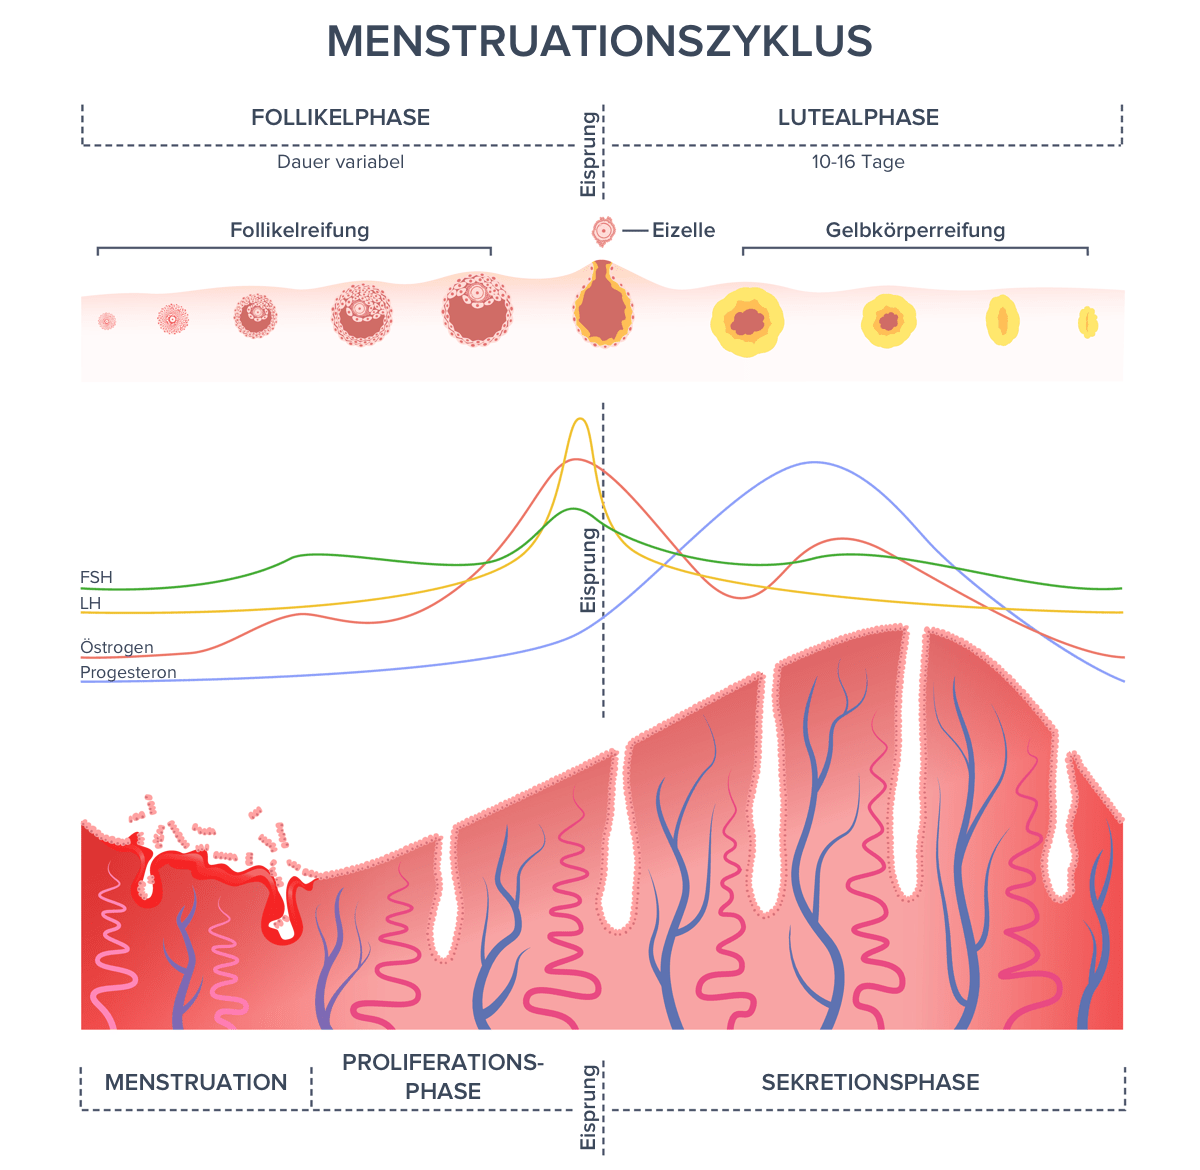 Menstruationszyklus: Follikelphase dauert bis zum Eisprung und ist in der Länger variabel, danach folgt die Lutealphase, die fast immer 10–16 Tage lang ist